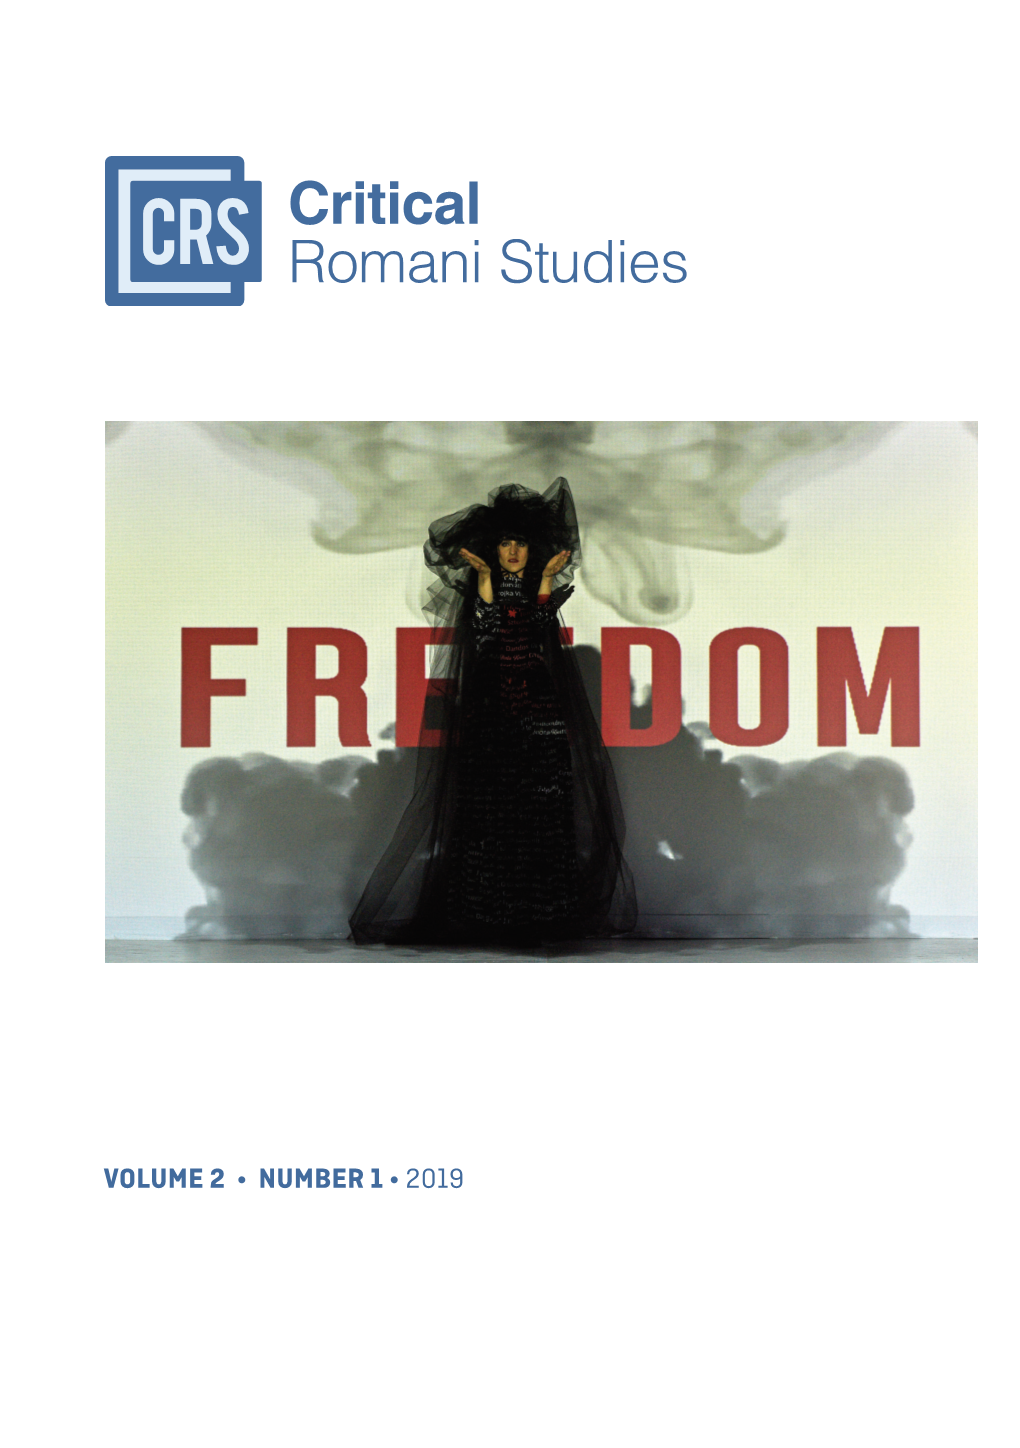 Critical Romani Studies Vol. 2, No. 1. (2019.)